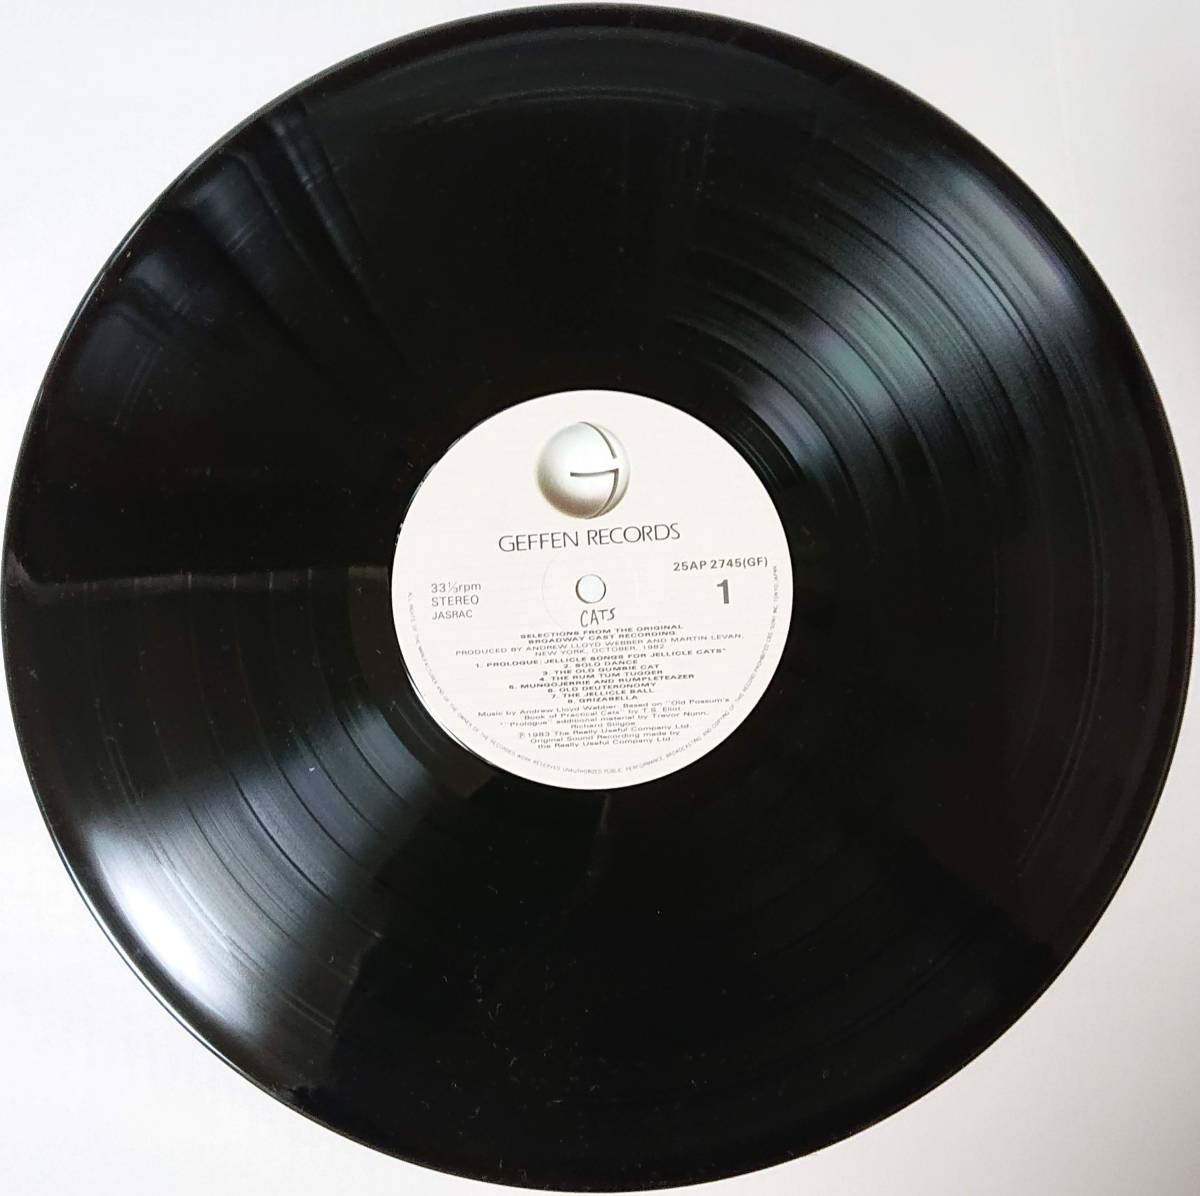 CATS ANDREW LLOYD WEBBER キャッツ ～ベストセレクション～ 帯なし 国内盤 中古 アナログ LPレコード盤 1983年 25AP 2745 M2-KDO-1304_画像3